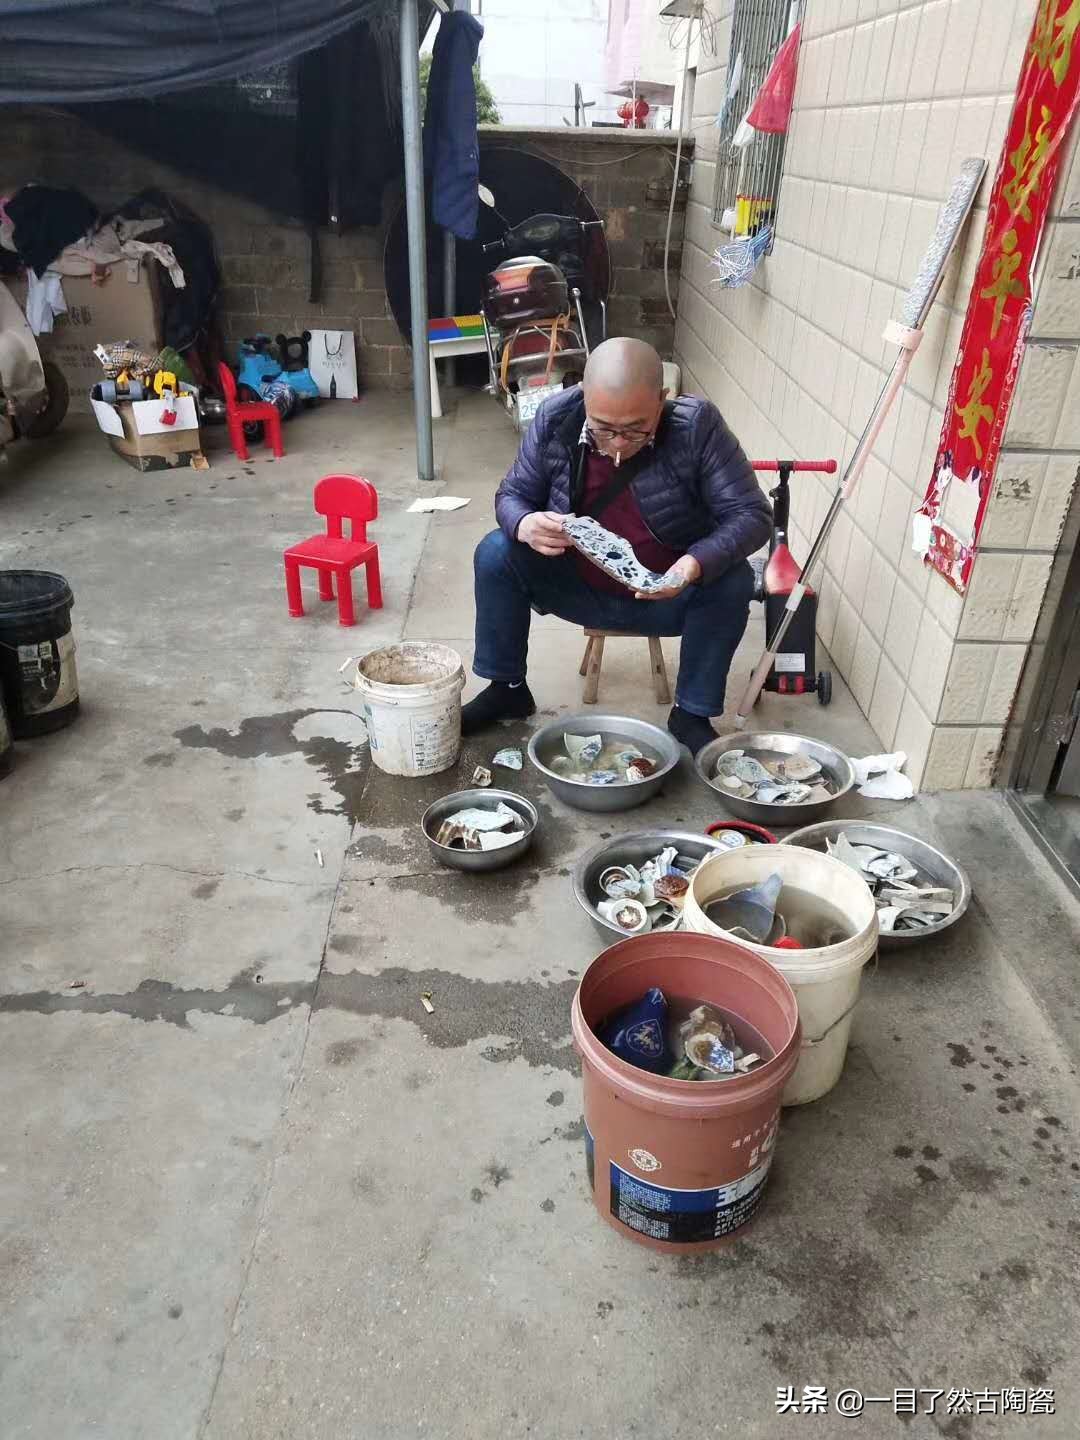 上手国宝级瓷片的学瓷好去处——景德镇陶溪川文化创意园